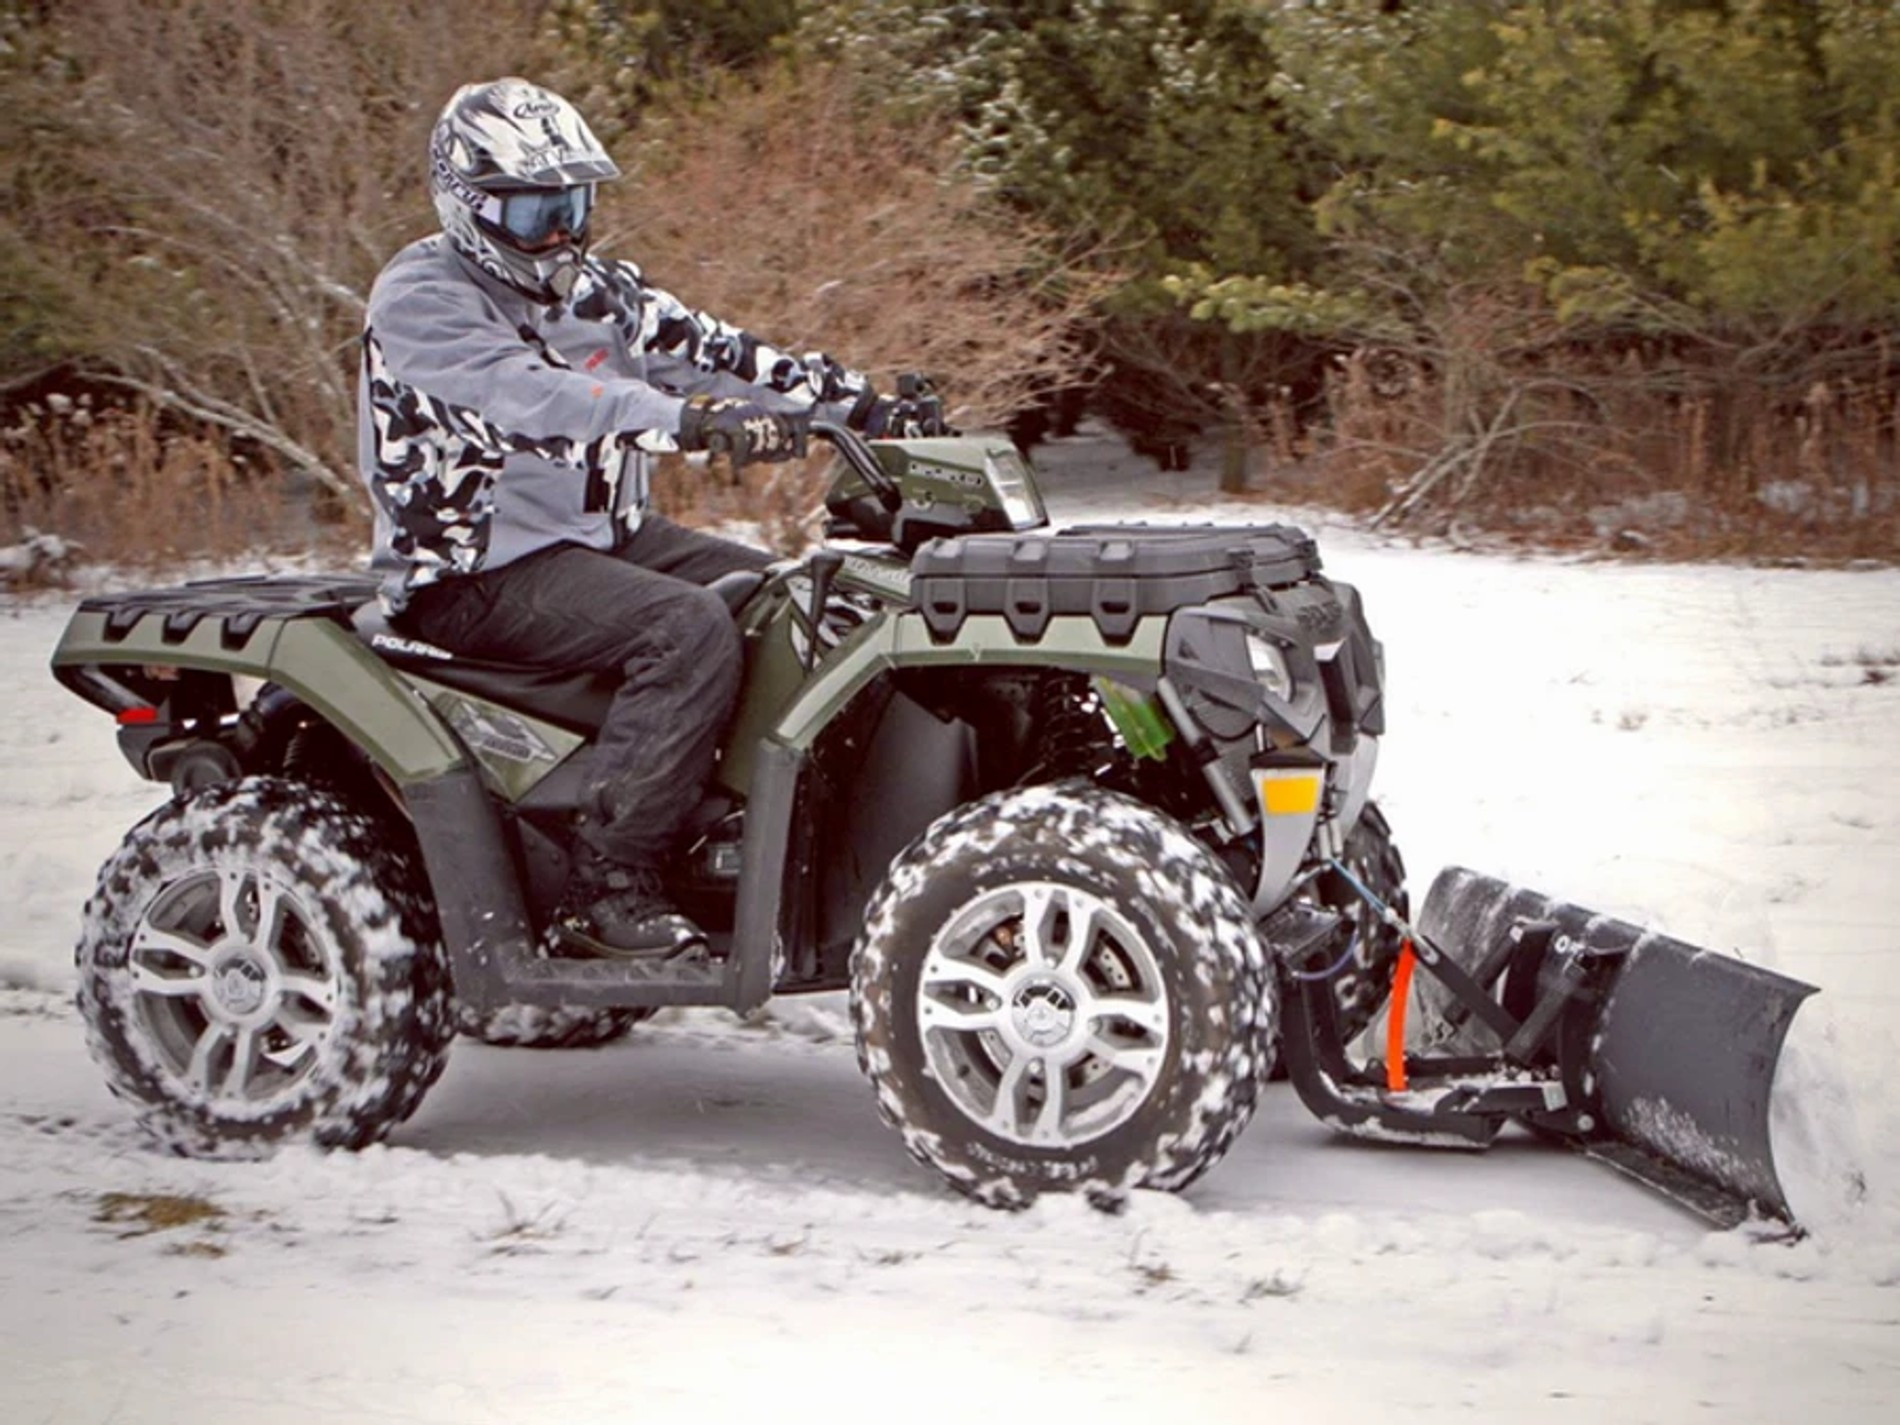 Джереми Реннер на снегоуборочной машине
Фото: TMZ